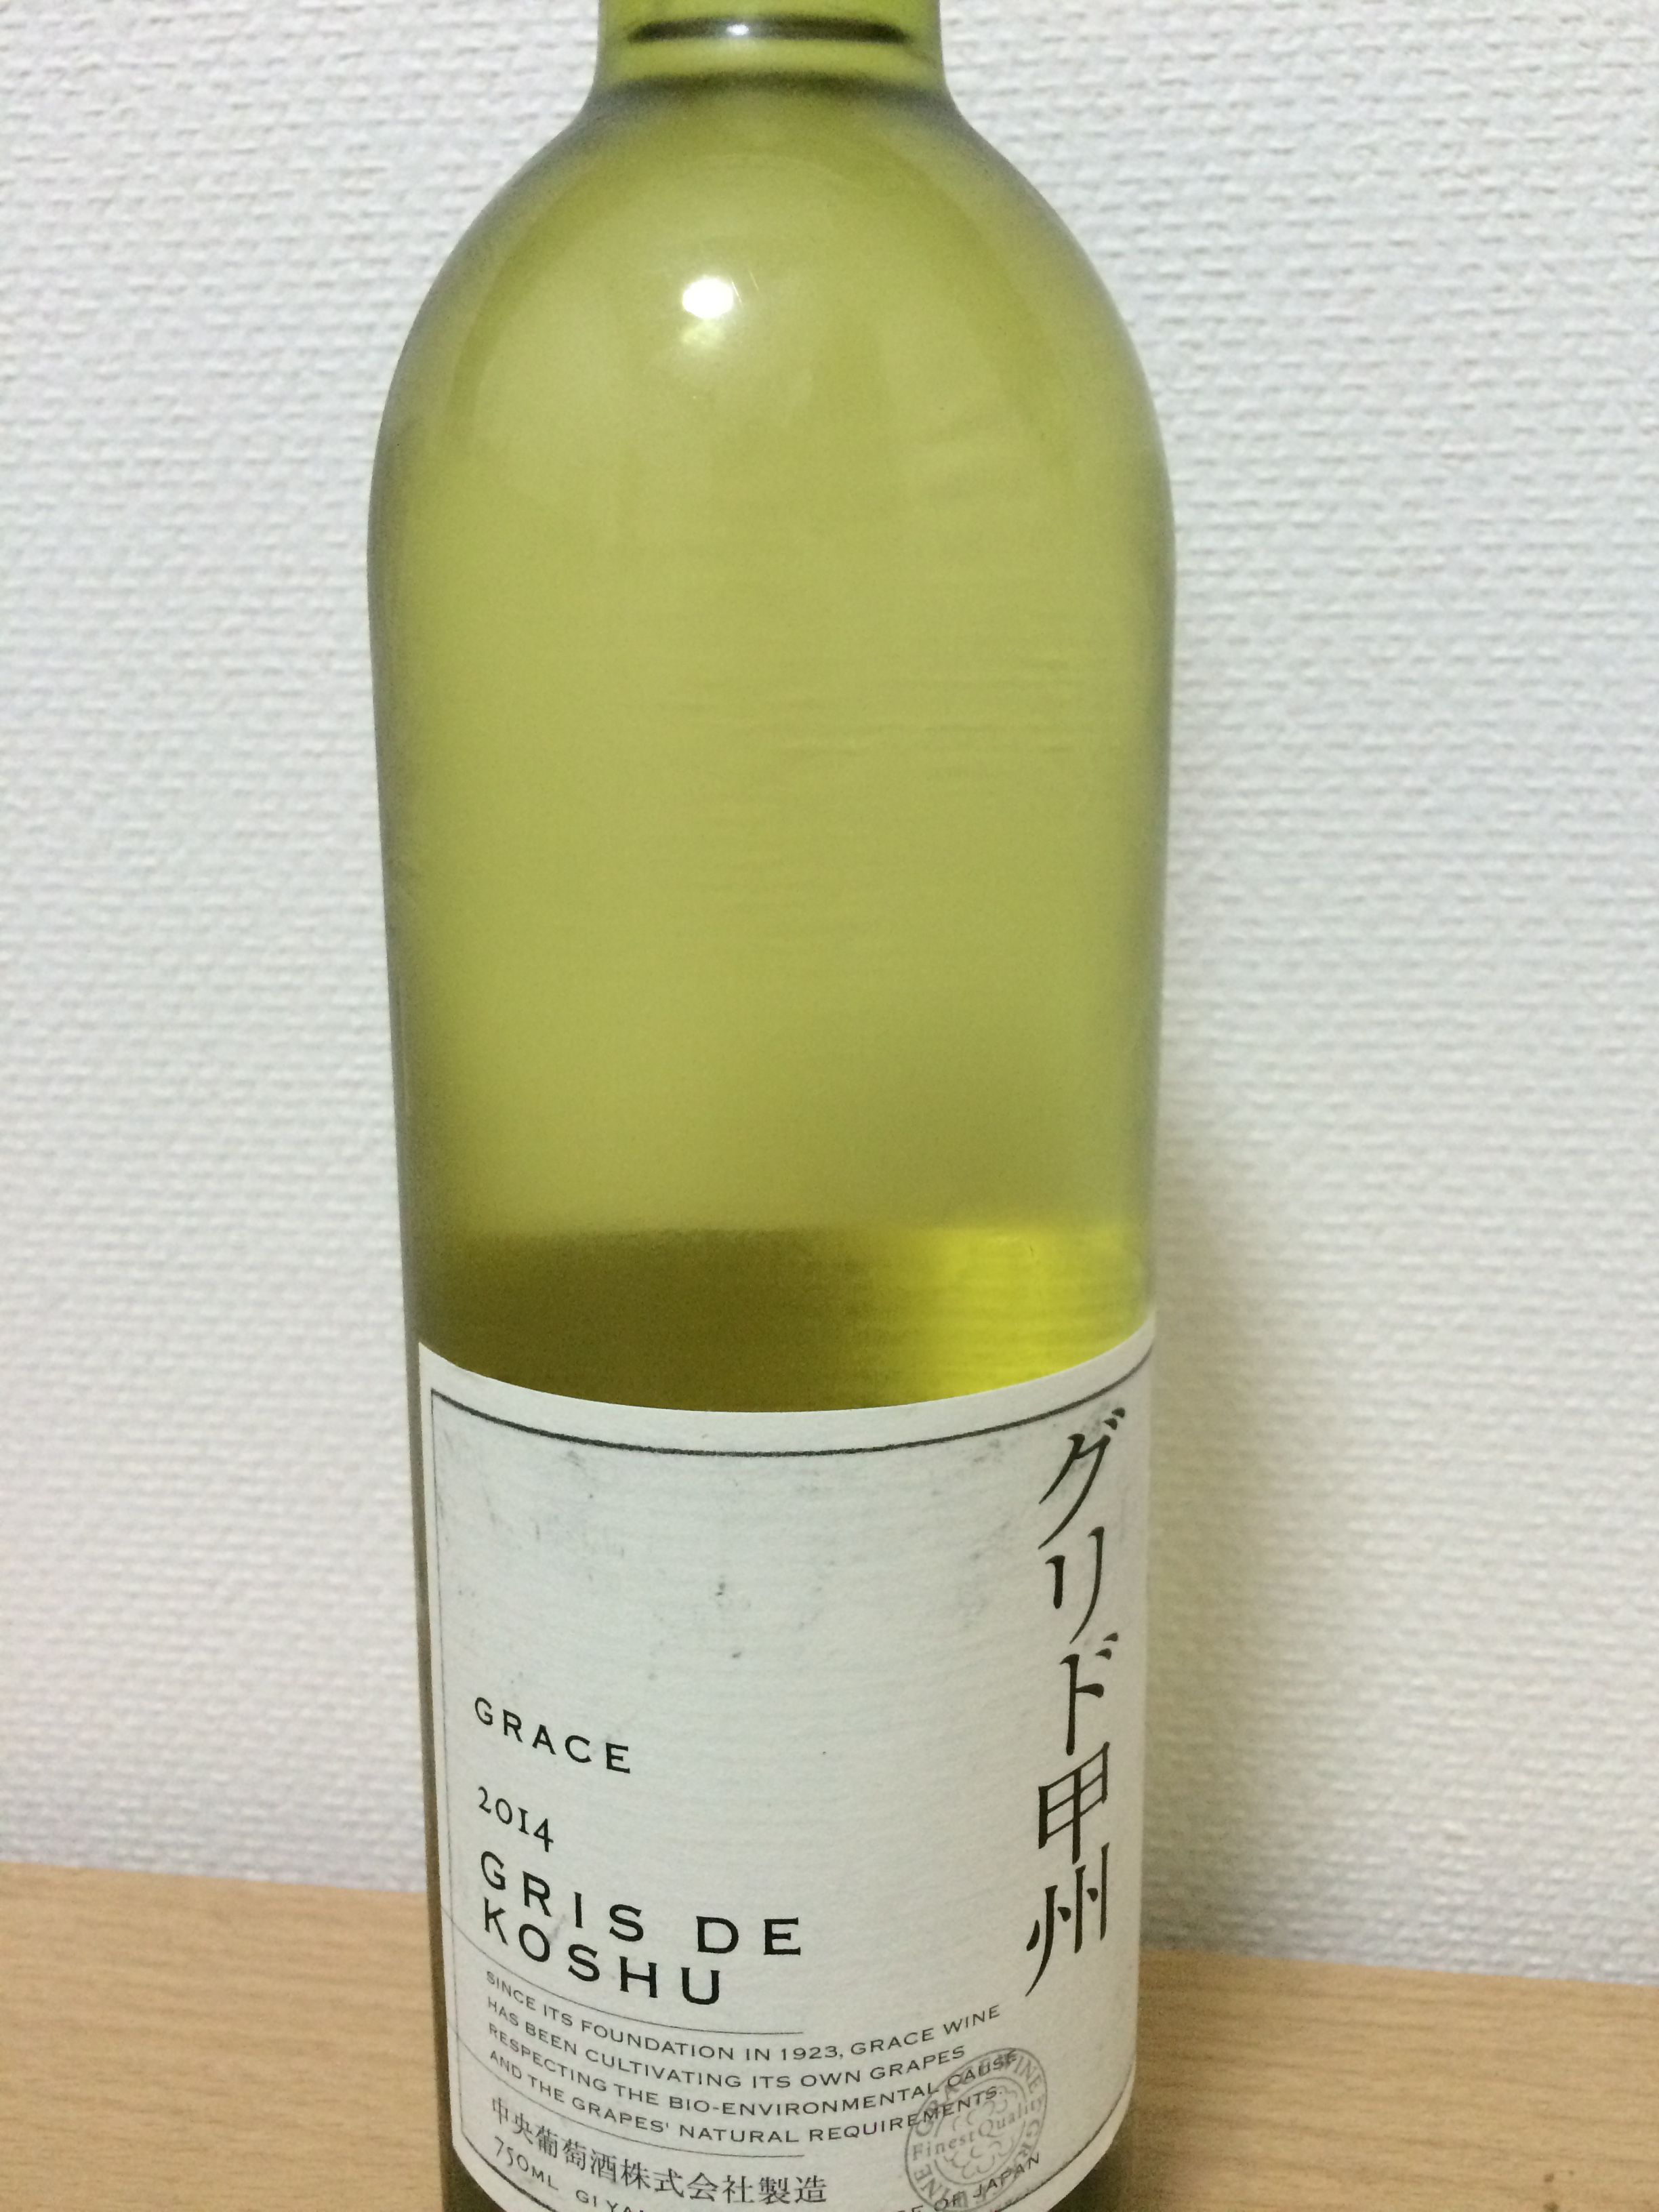 日本ワイン白「グレイス グリド甲州」の感想 口コミ レビュー | ネット 